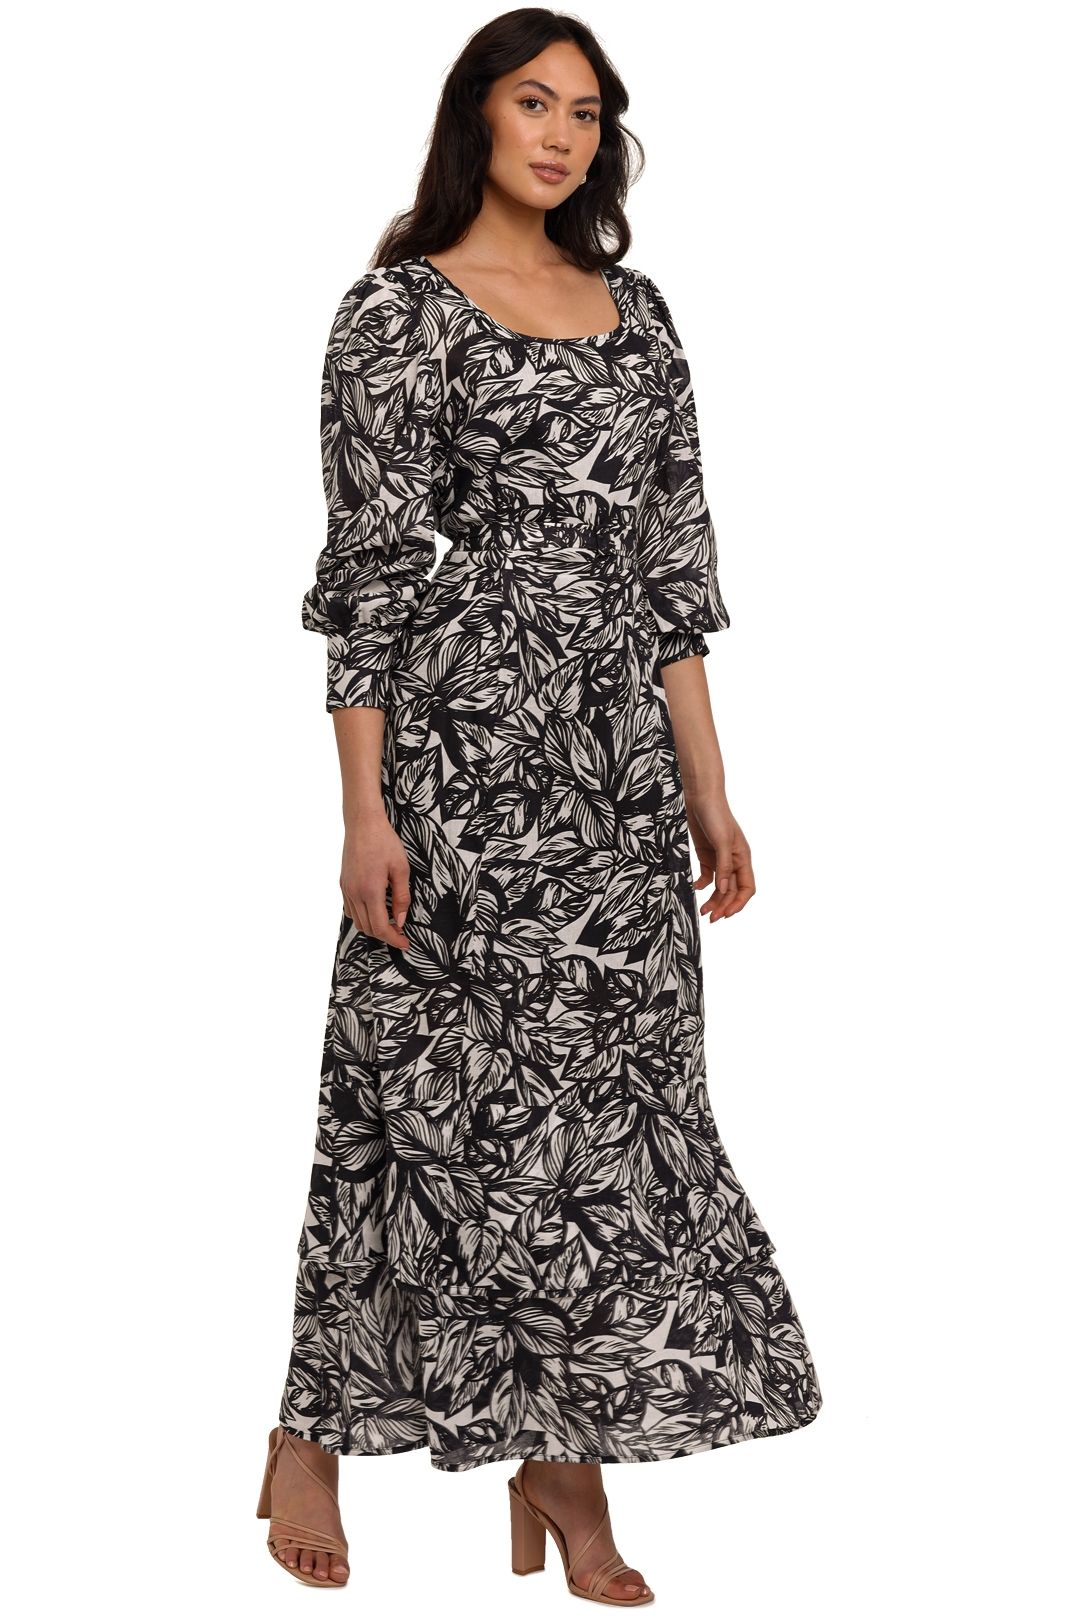 Morrison Kit Printed Maxi Dress Black White